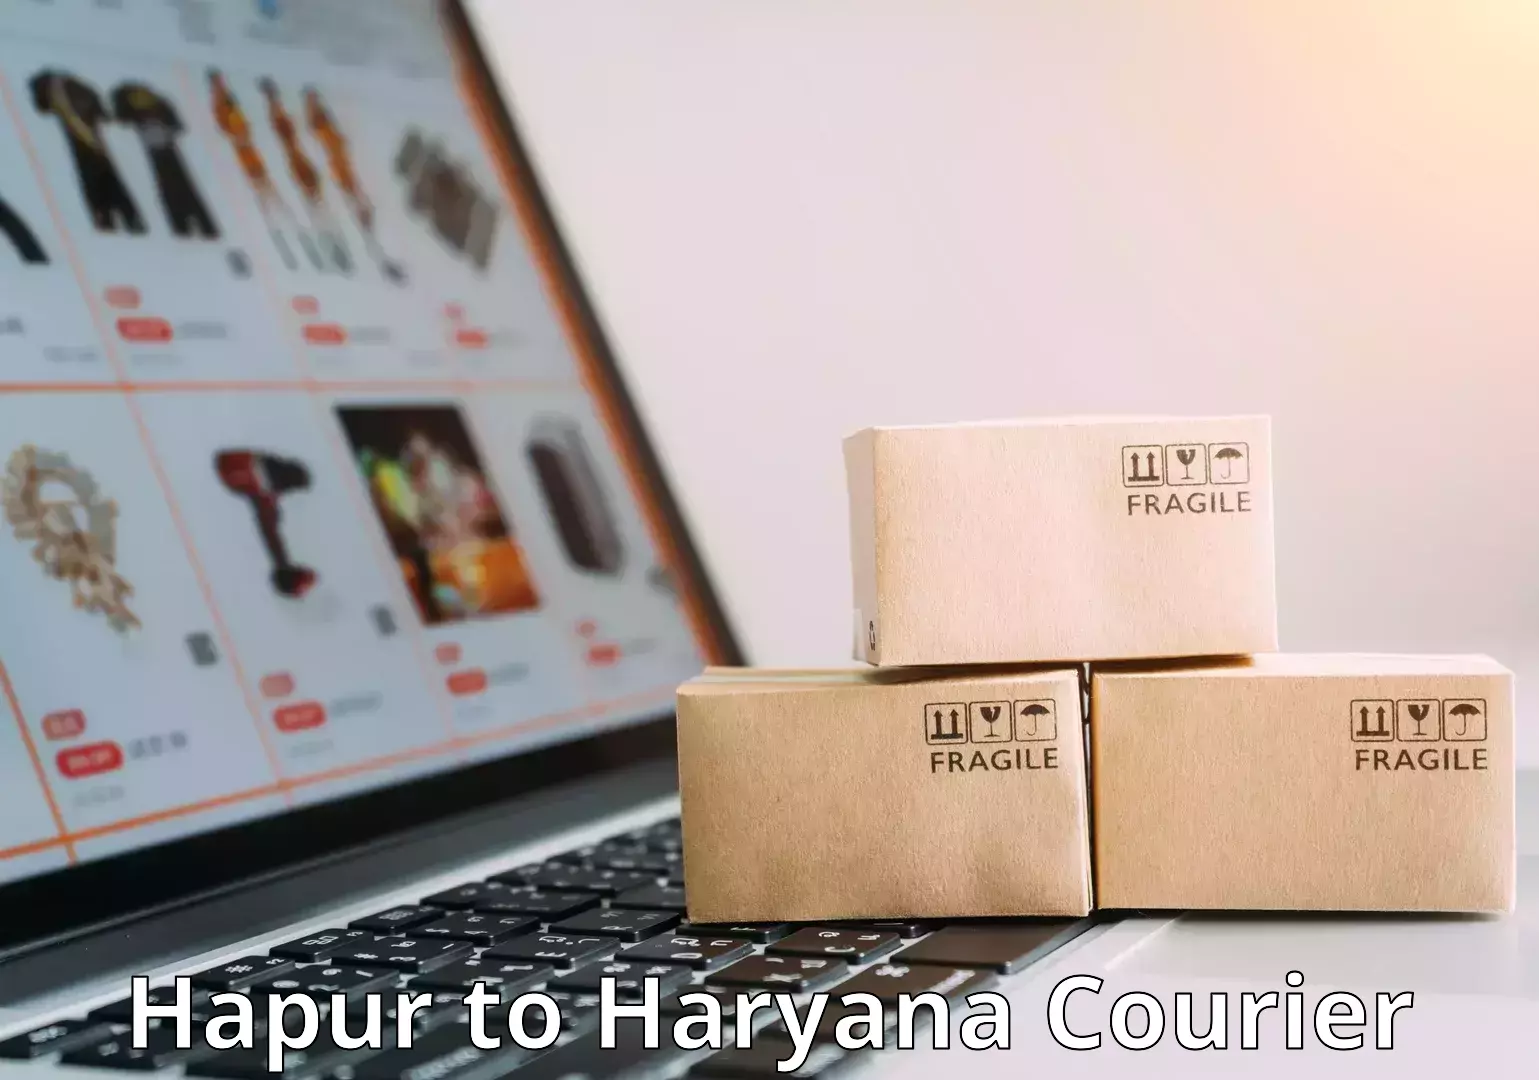 Door-to-door baggage service Hapur to Haryana